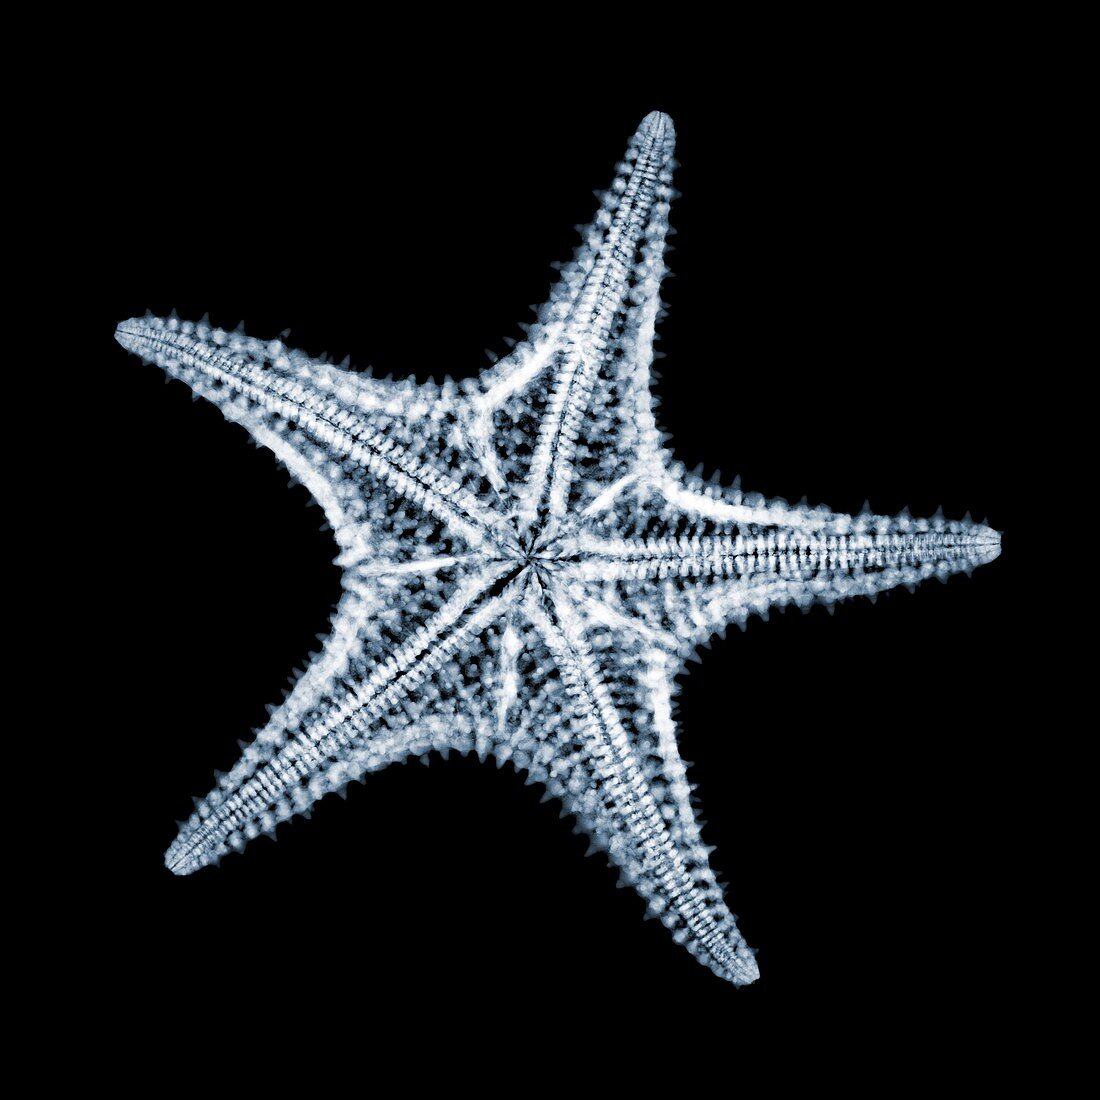 Red cushion starfish (Oreaster reticulatus), X-ray